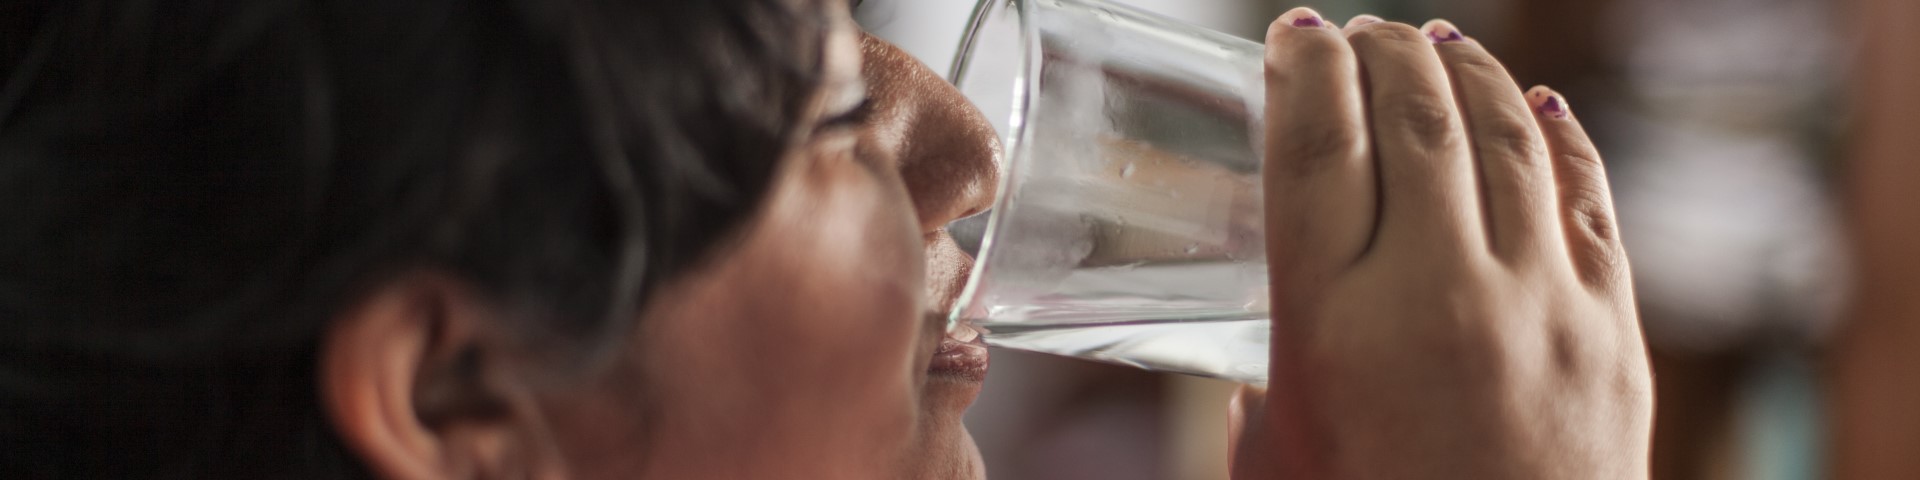 Una mujer bebe agua de un vaso.